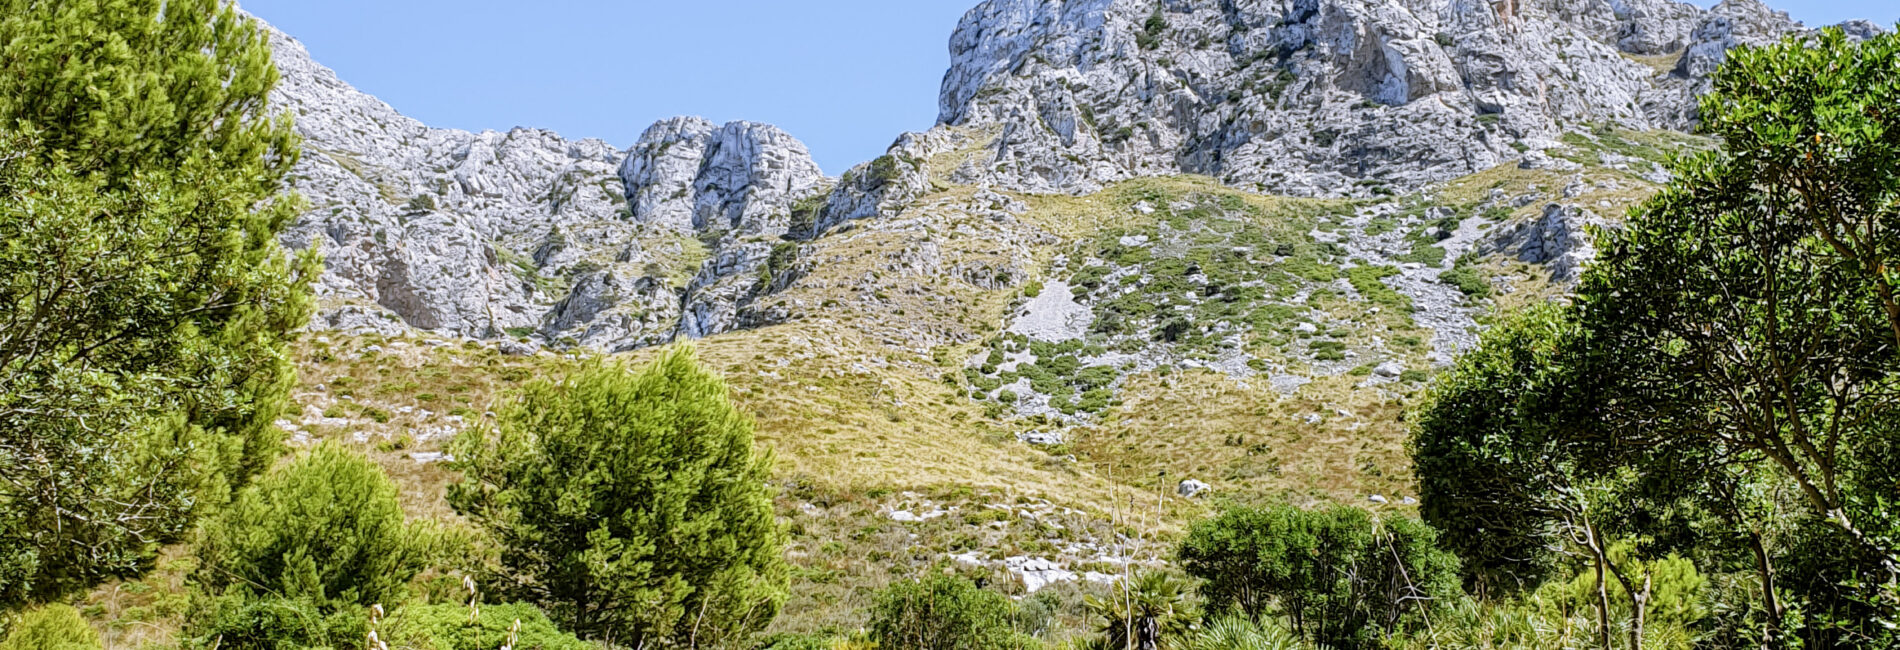 Platja de Son Bunyola na Majorce – dzikie, zachodnie wybrzeże